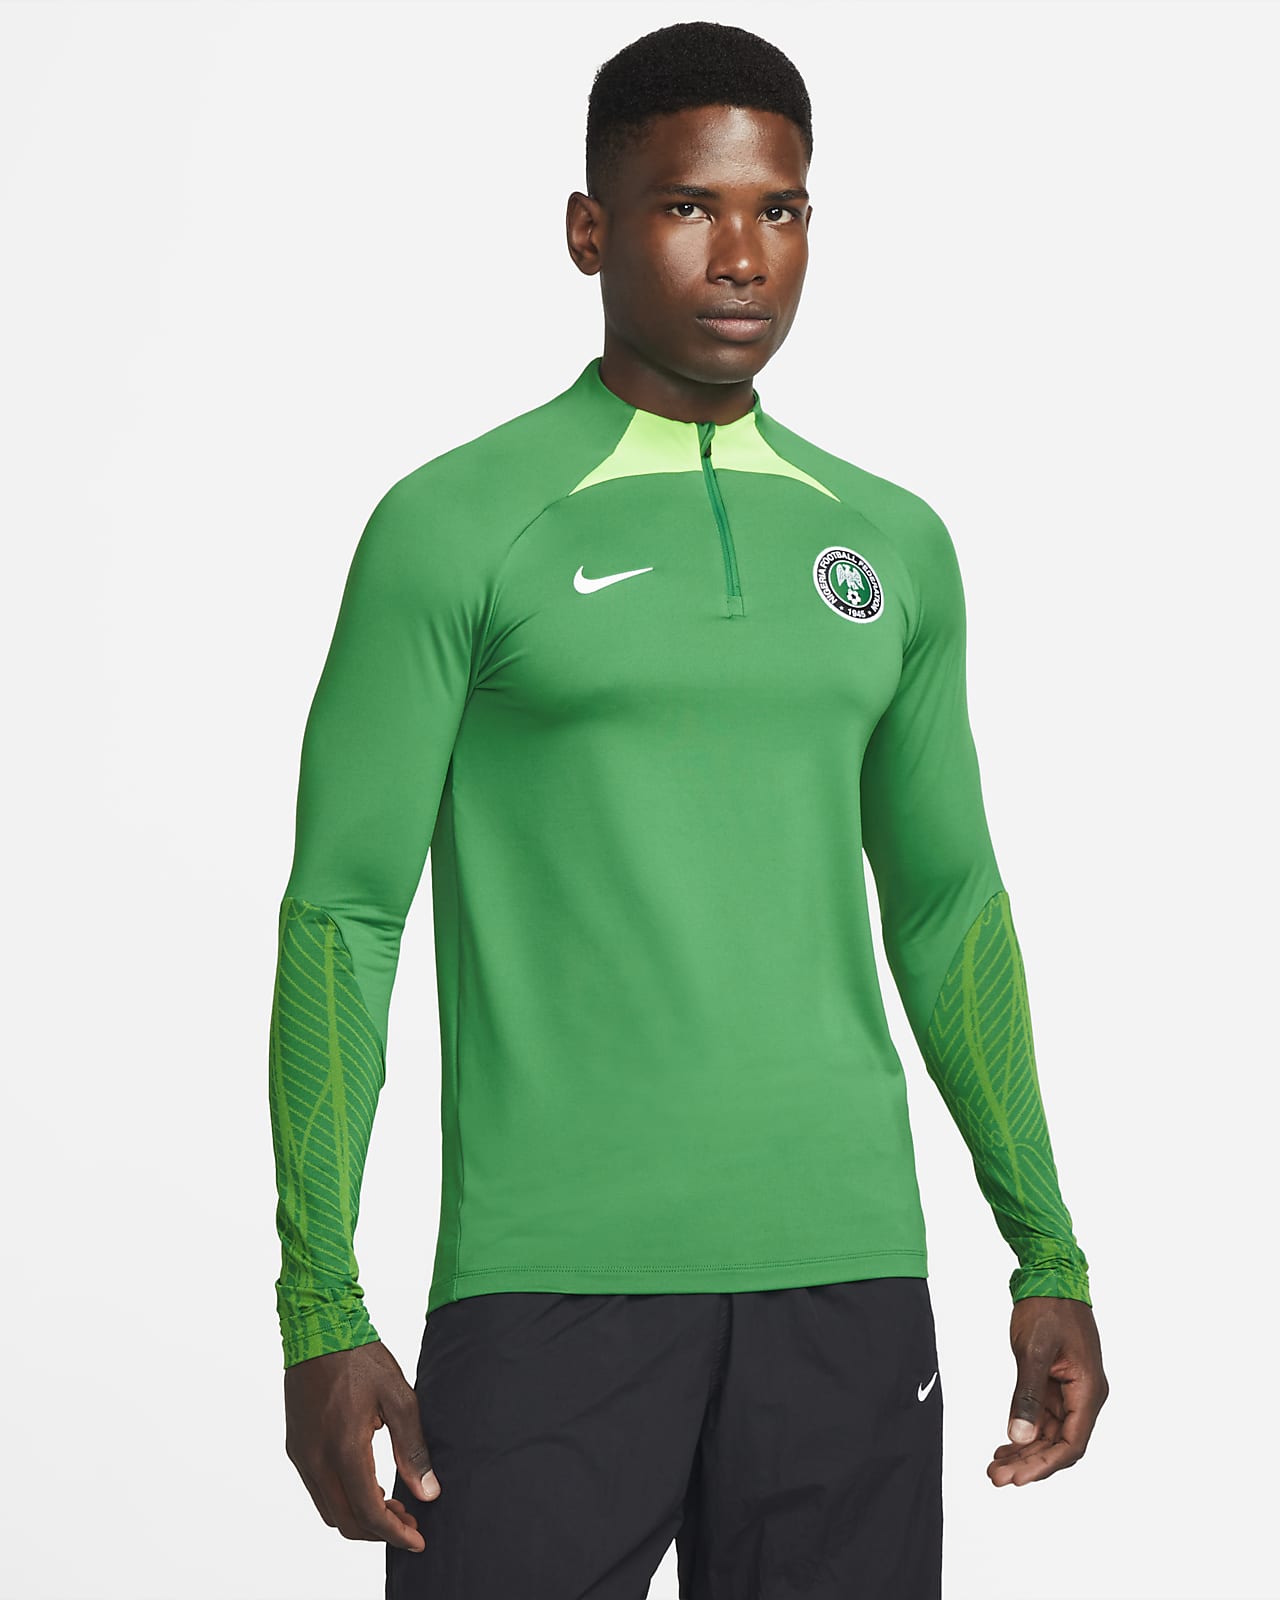 Nigeria Strike Men's Dri-FIT Knit Soccer Drill Top.